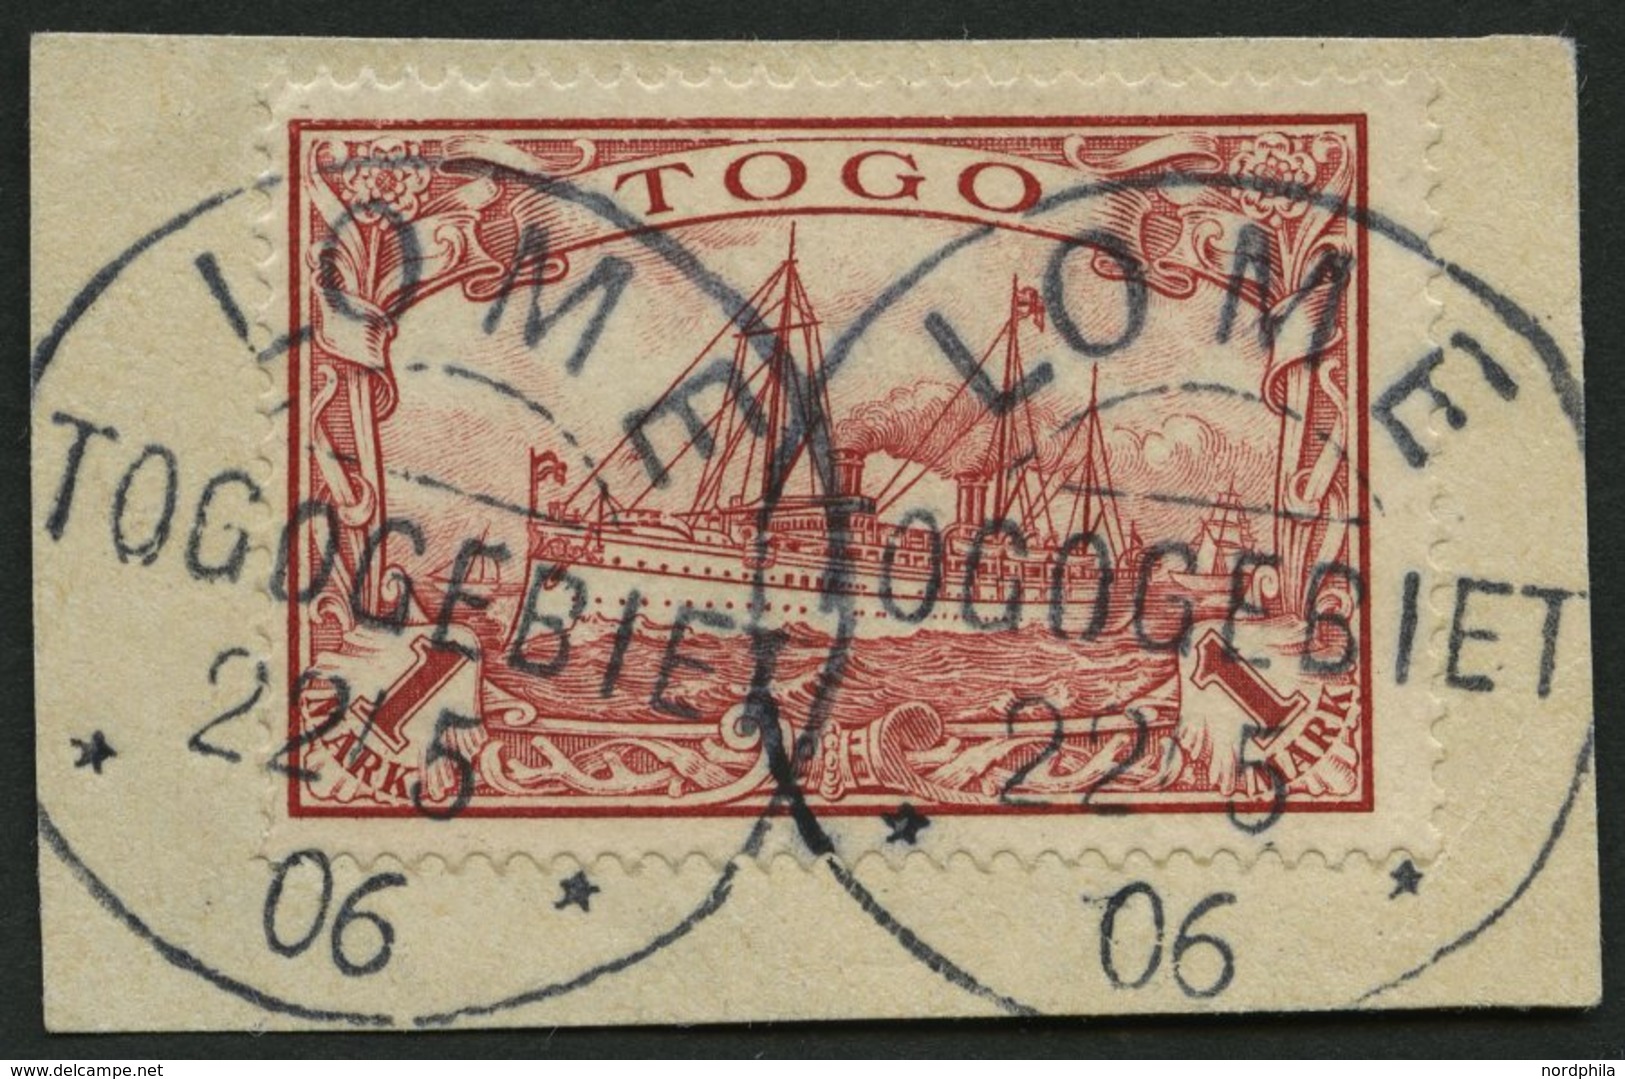 TOGO 16I BrfStk, 1900, 1 M. Rot Mit Plattenfehler Wolke Zwischen Den Halteseilen Des Ersten Mastes, Prachtbriefstück, Mi - Togo